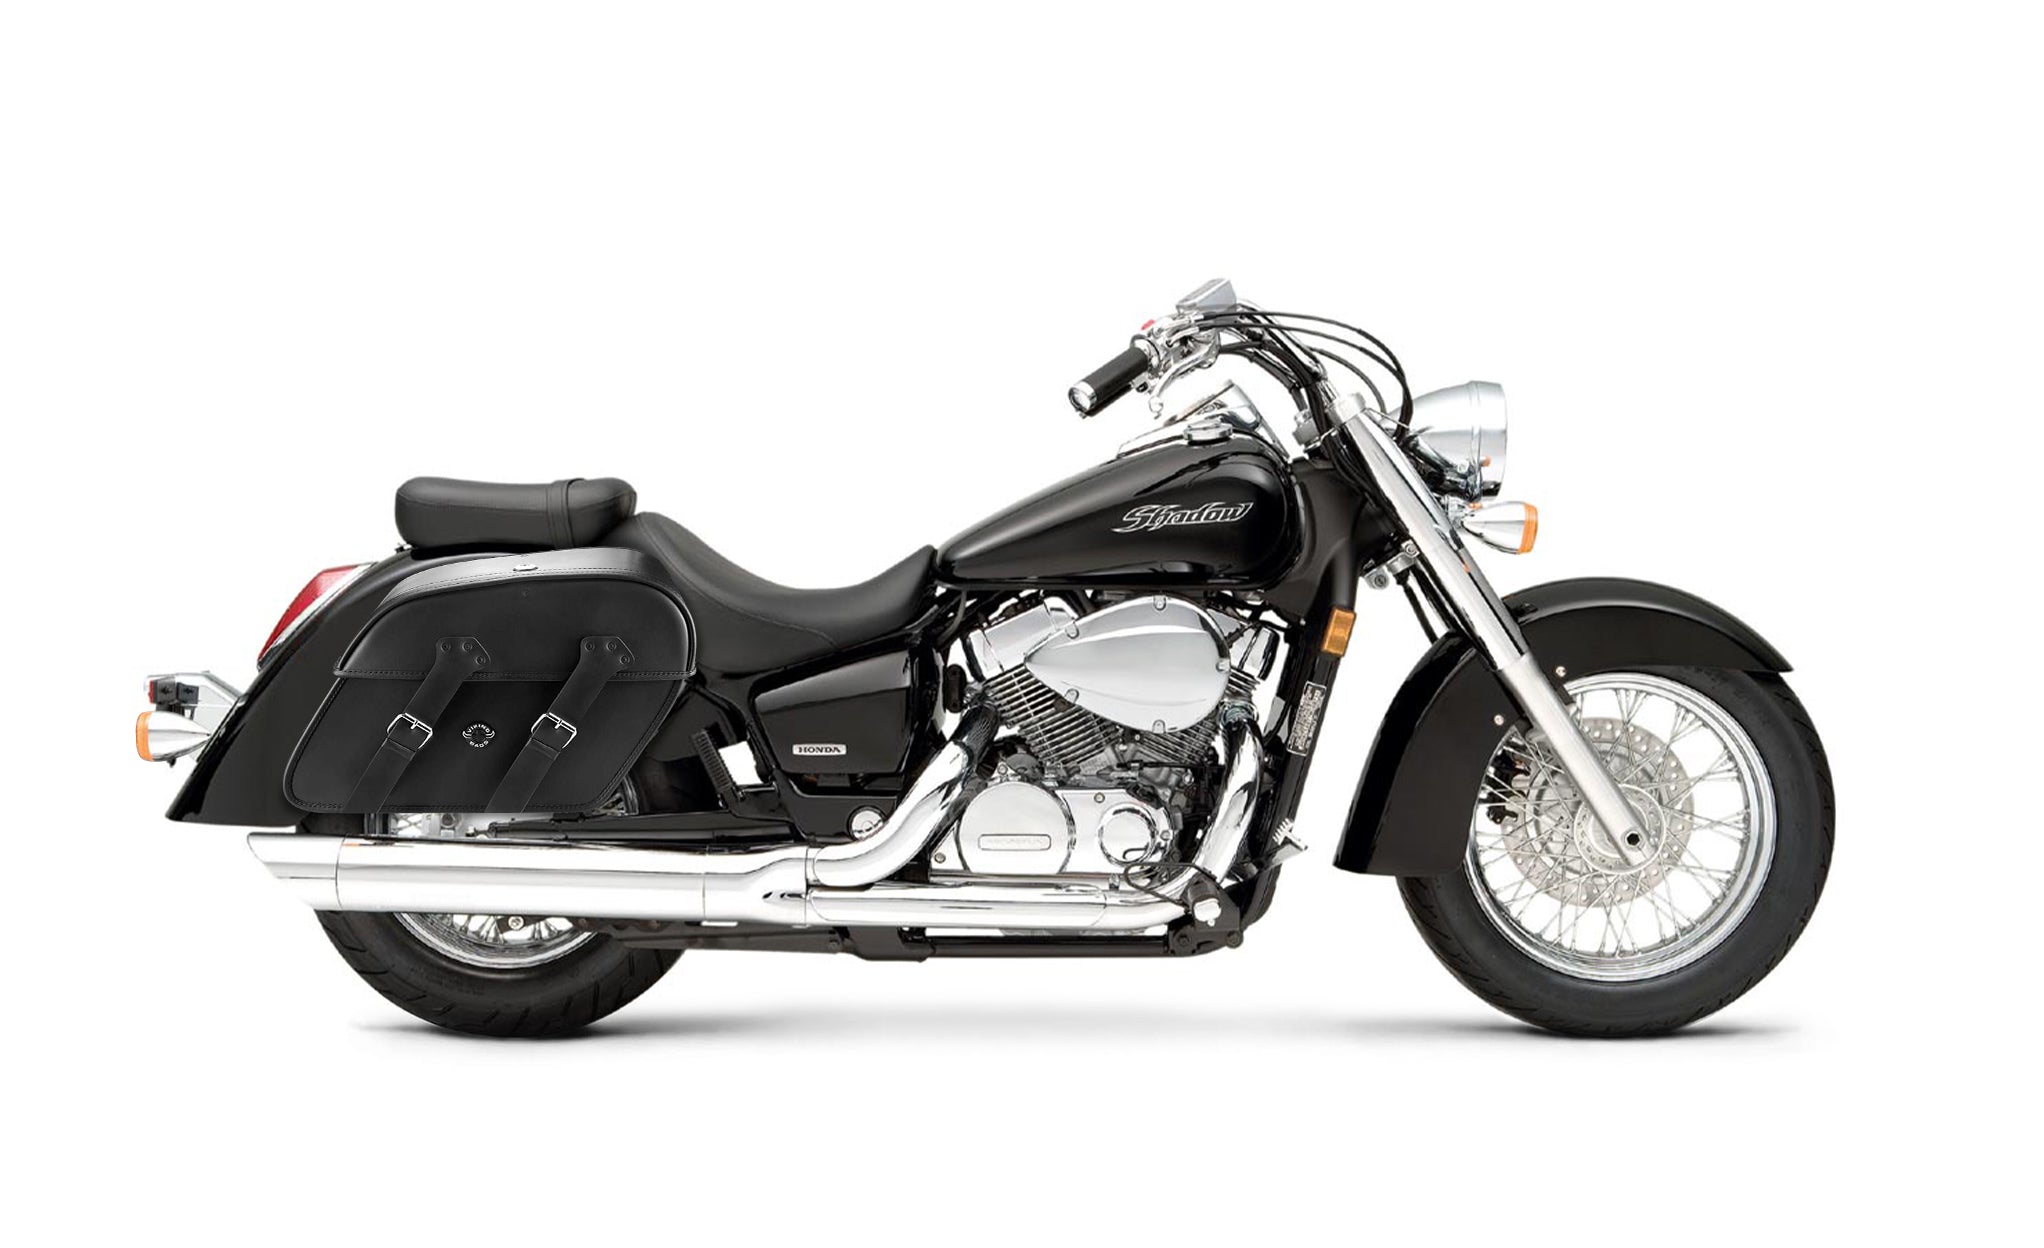 Viking Raven Extra Large Honda Shadow 750 Aero Shock Cut Out Leather Motorcycle Saddlebags on Bike Photo @expand